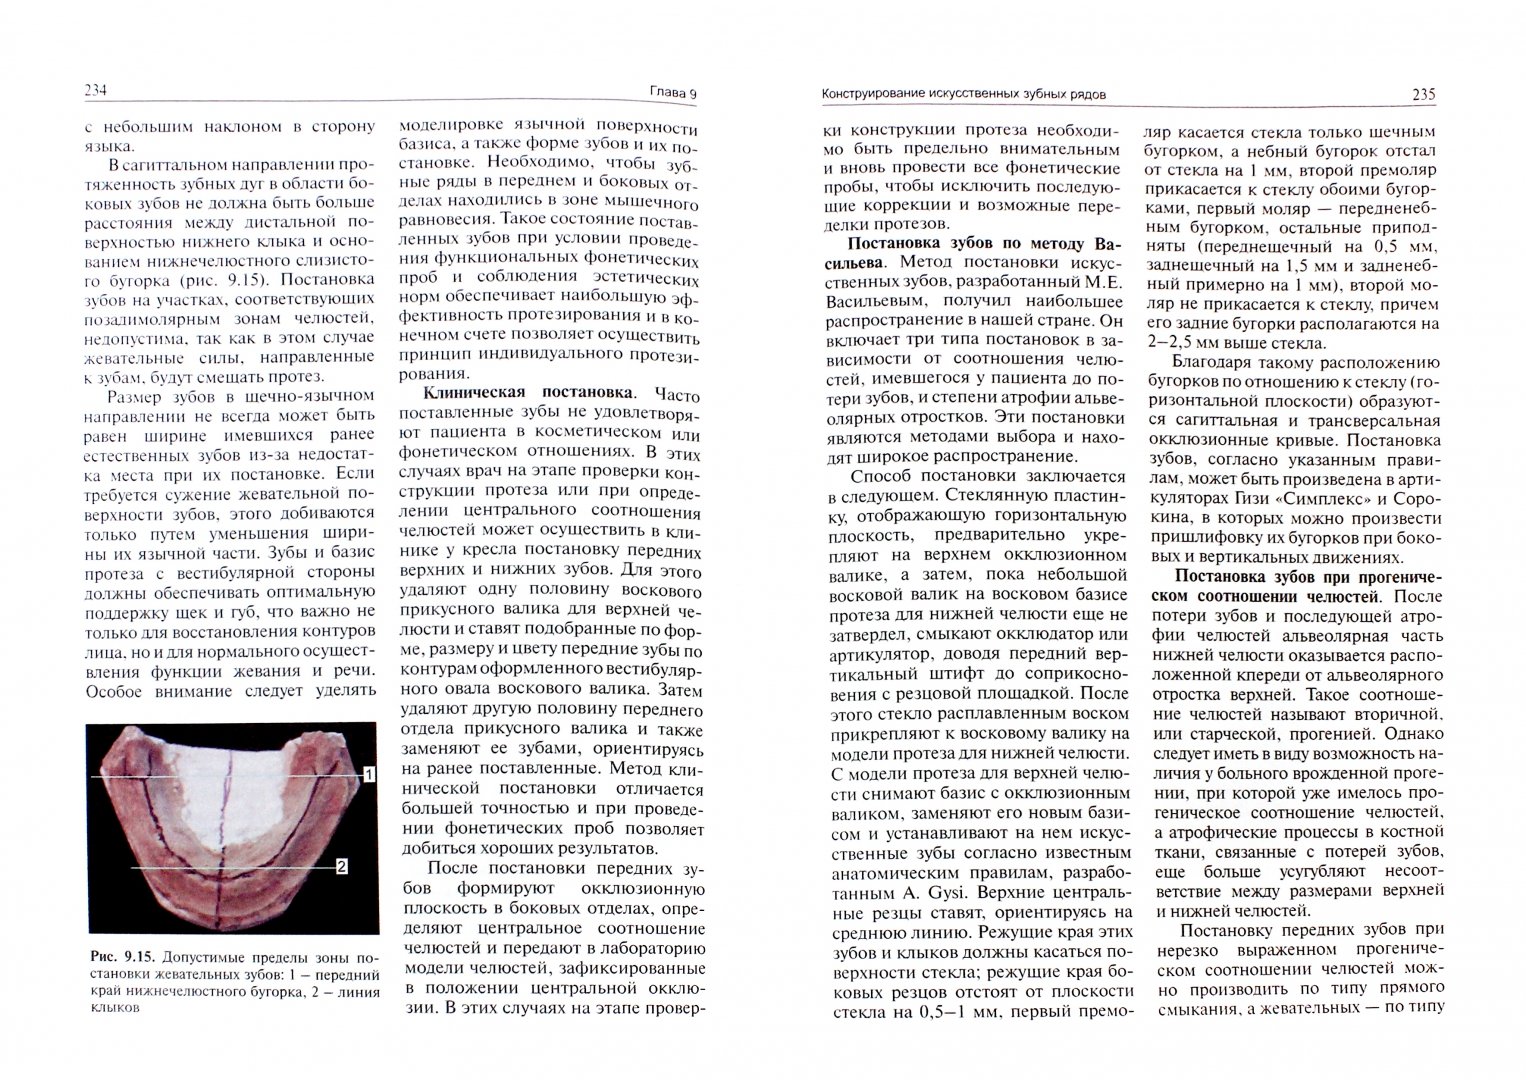 Иллюстрация 1 из 5 для Протезирование при полной адентии - Валерий Загорский | Лабиринт - книги. Источник: Лабиринт